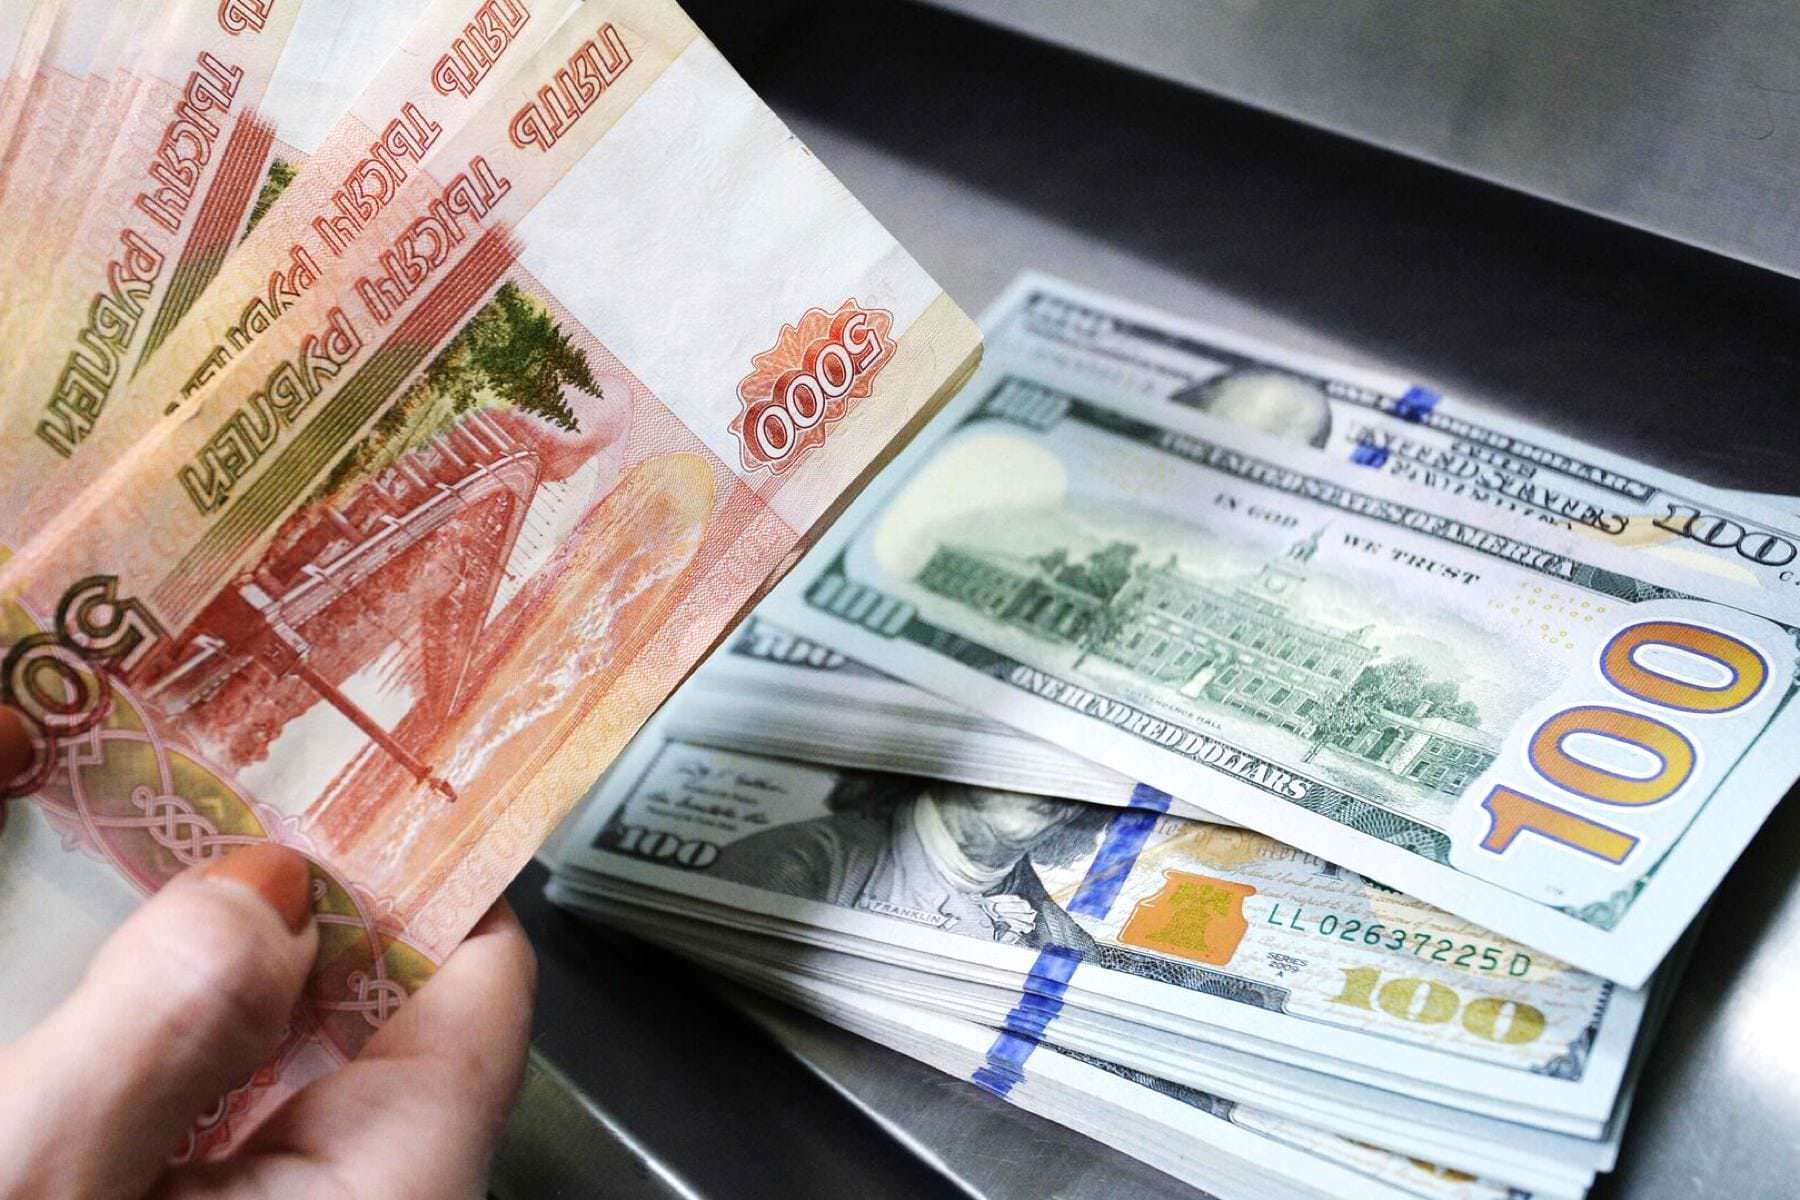 Счета обнулены. С 6 ноября более 16 млн россиян потеряли все деньги